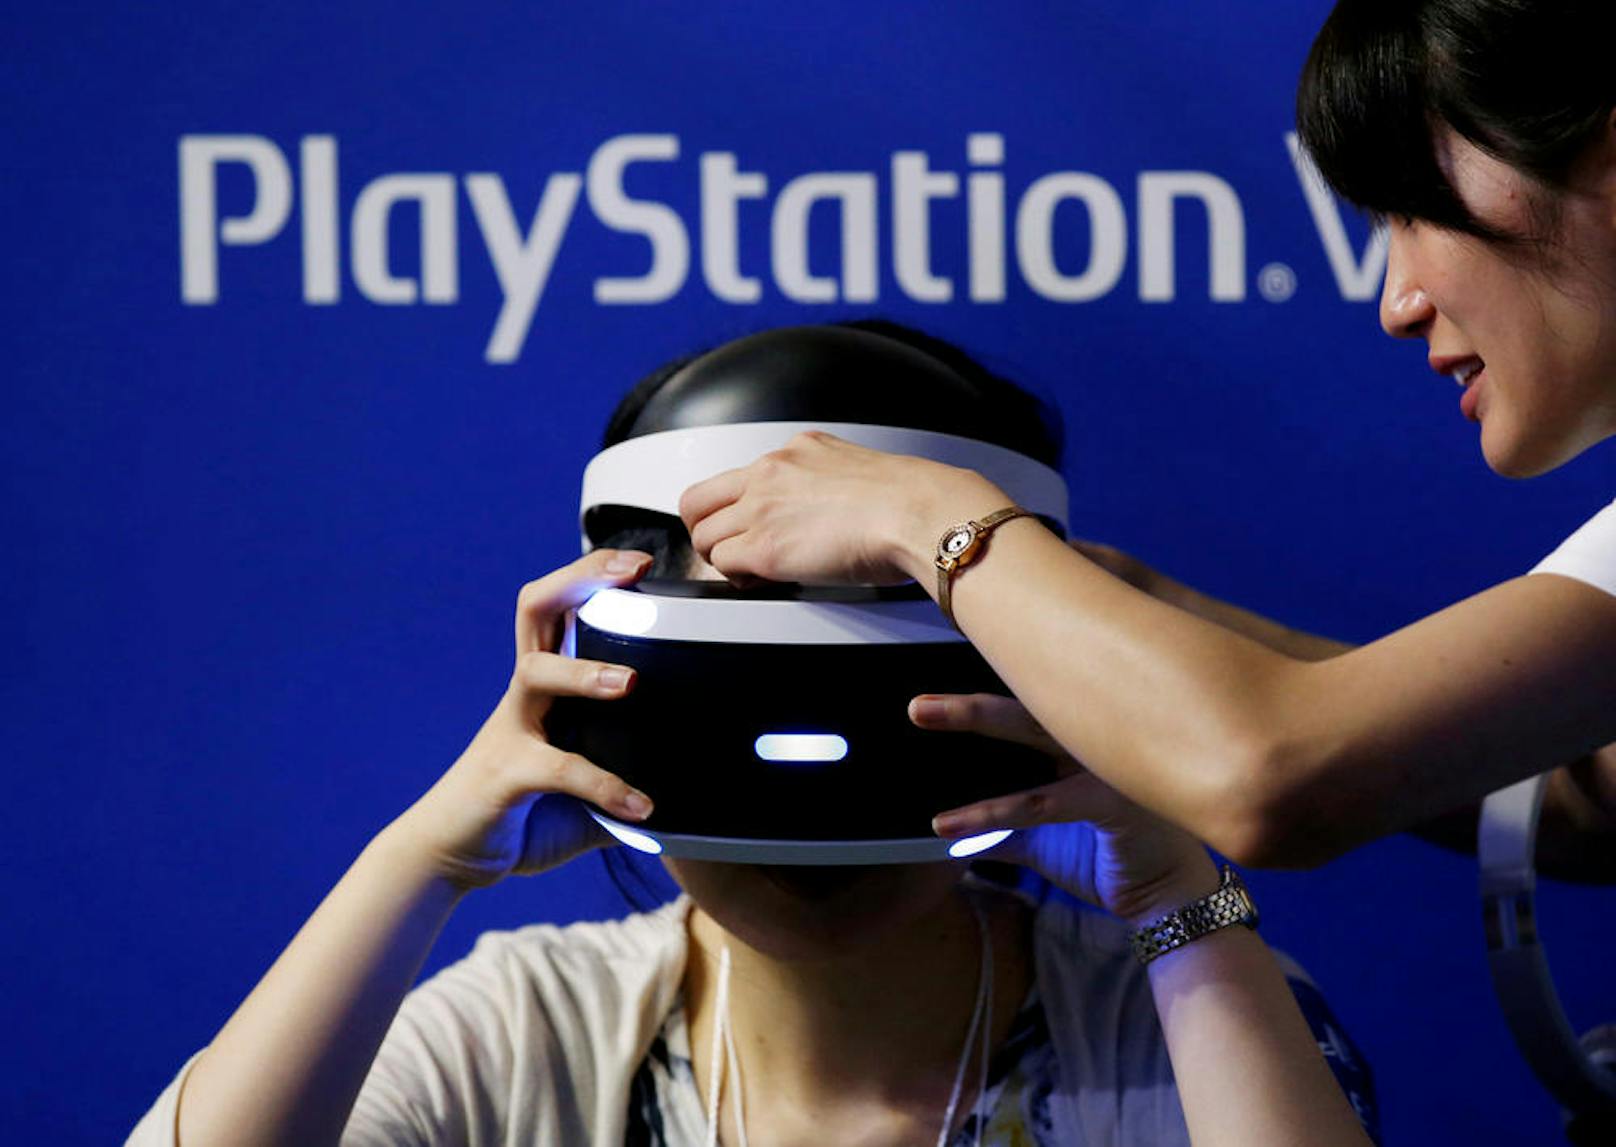 <b>29. März 2018: </b>Sony senkt die Preise für die Virtual-Reality-Brille PlayStation VR drastisch. Bundles mit zwei VR-Games und Kamera kosten neu nur noch 299 Euro statt 399 Euro. Auf Amazon wurde der Preis bereits angepasst, die heimischen Elektronik-Händler stellen die Preise derzeit um. Bisher sollen rund zwei Millionen PSVR-Headsets verkauft worden sein.